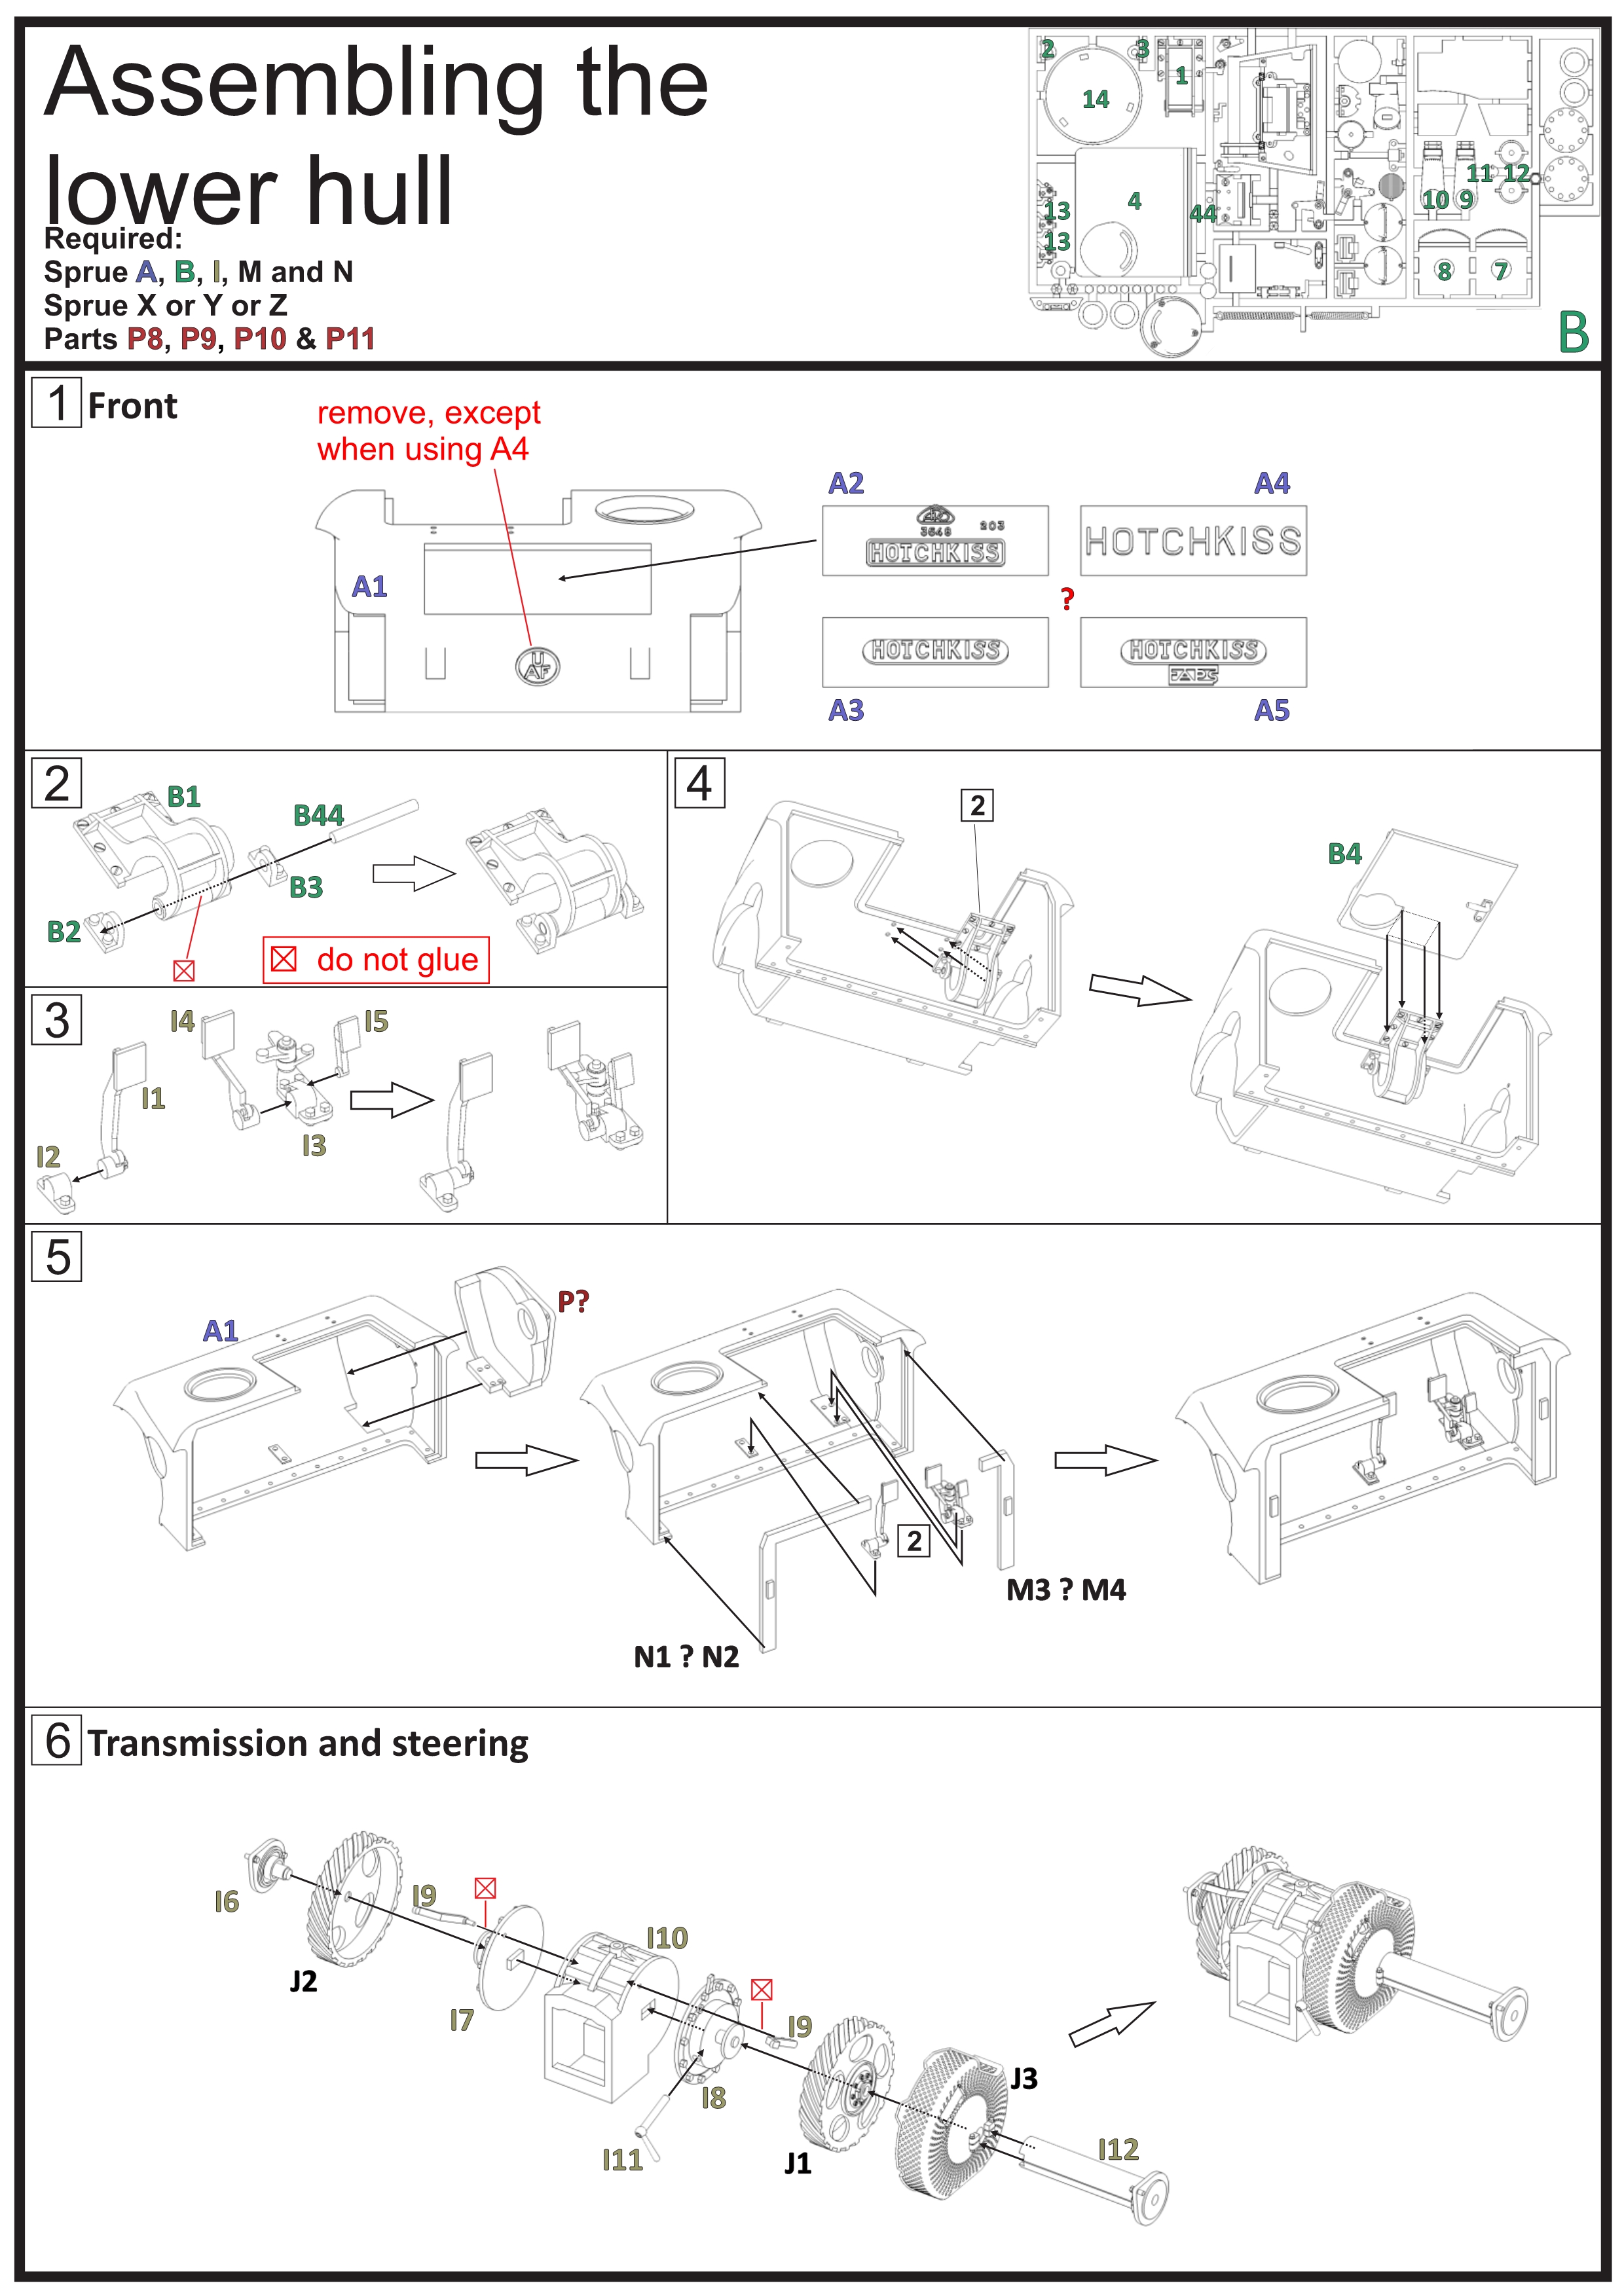 ETS35X01 - H39 Manual - Interior - p08 v2.jpg